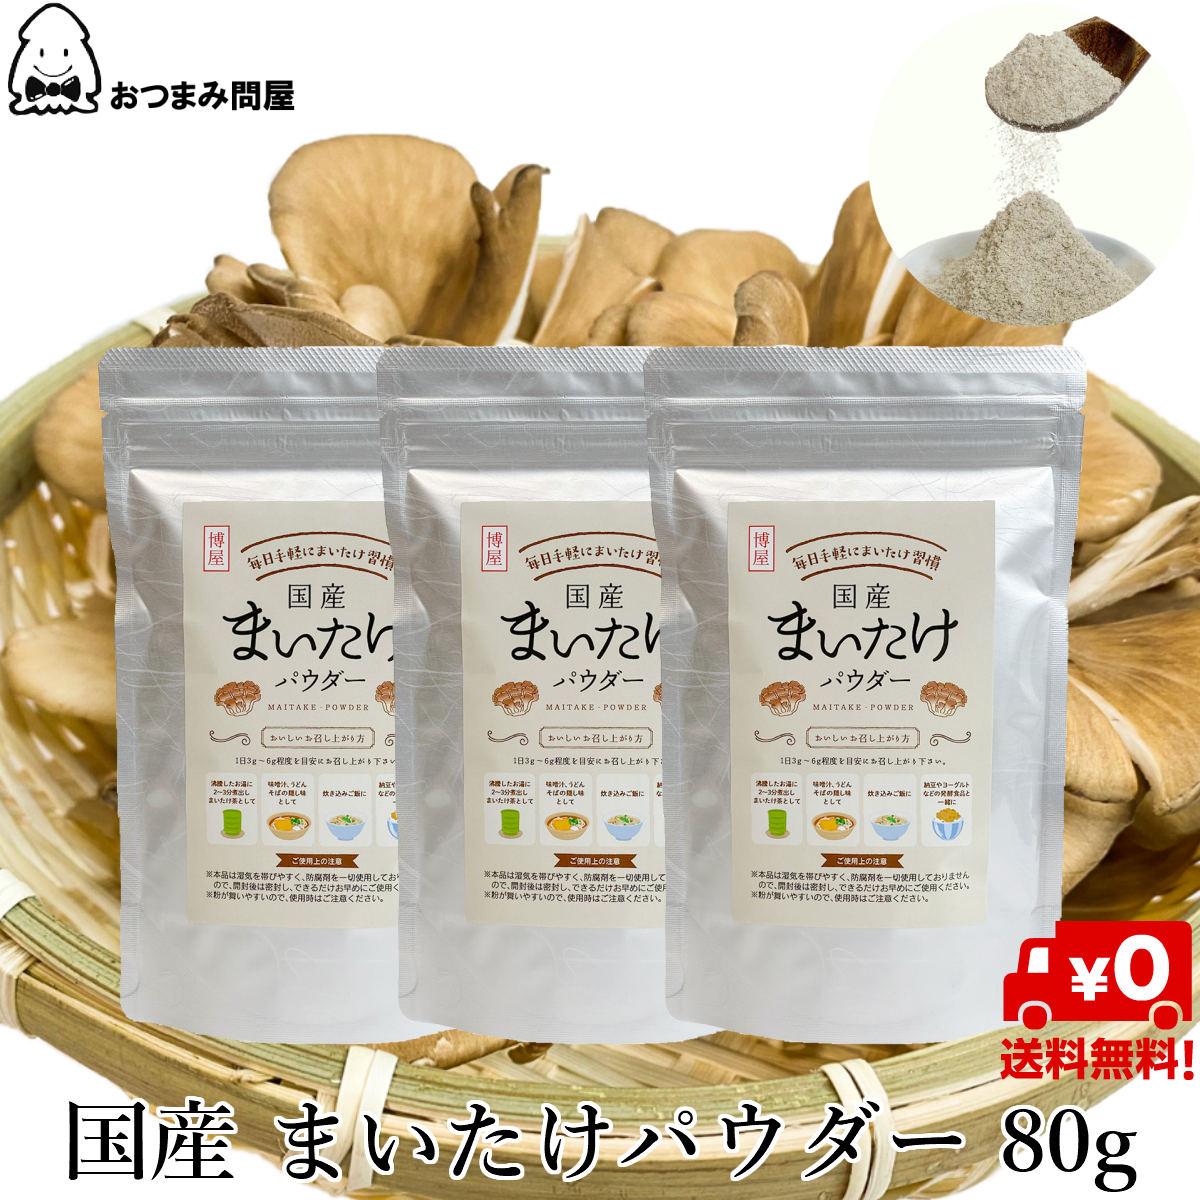 日本產 舞菇粉 舞菇粉末80g x 3包 舞菇 常溫保存 鋁包 夾鏈袋裝日本必買 | 日本樂天熱銷